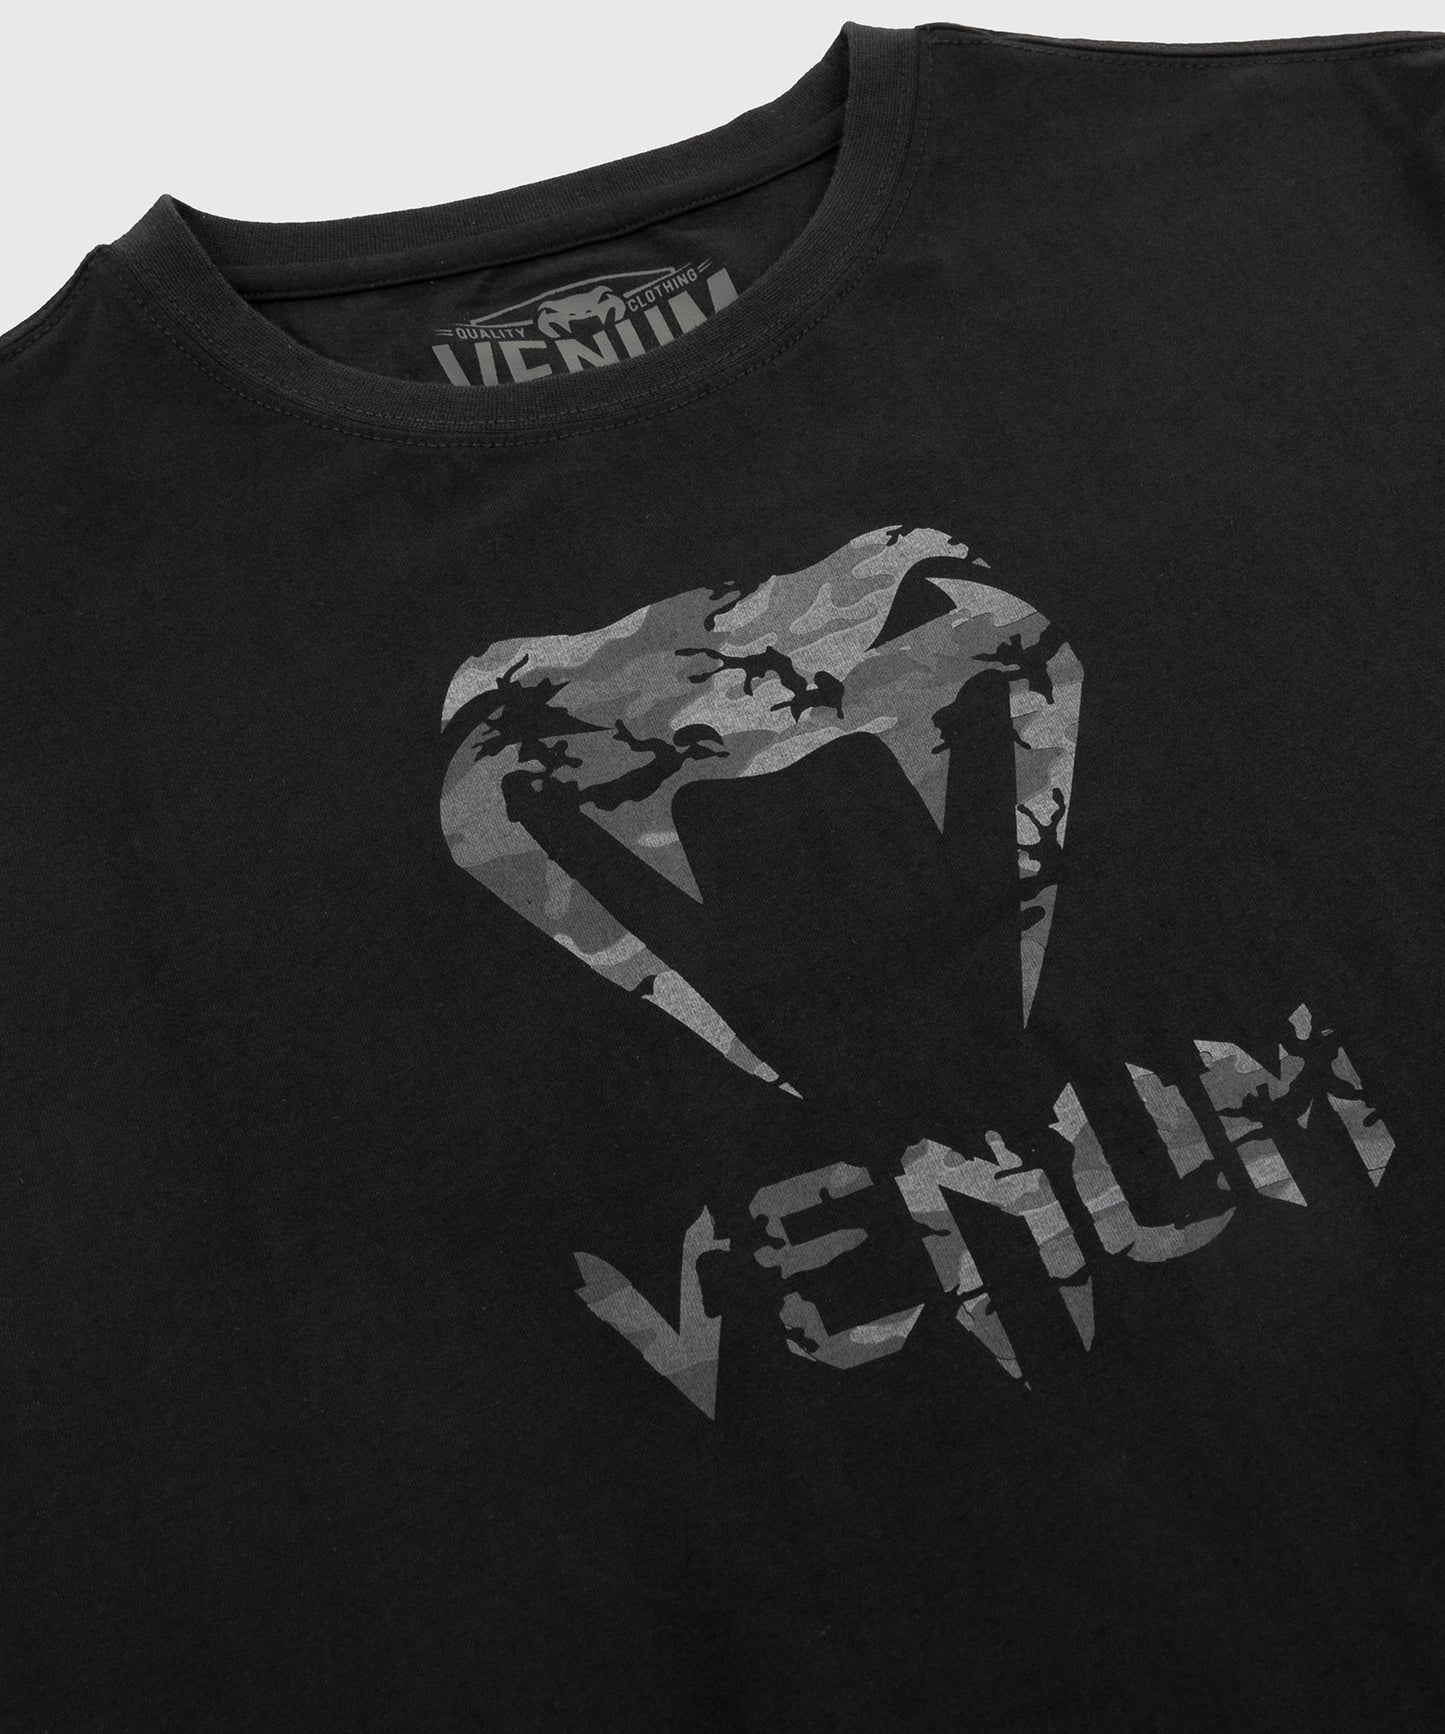 Camiseta Venum Classic - Negro/Camo Urbano